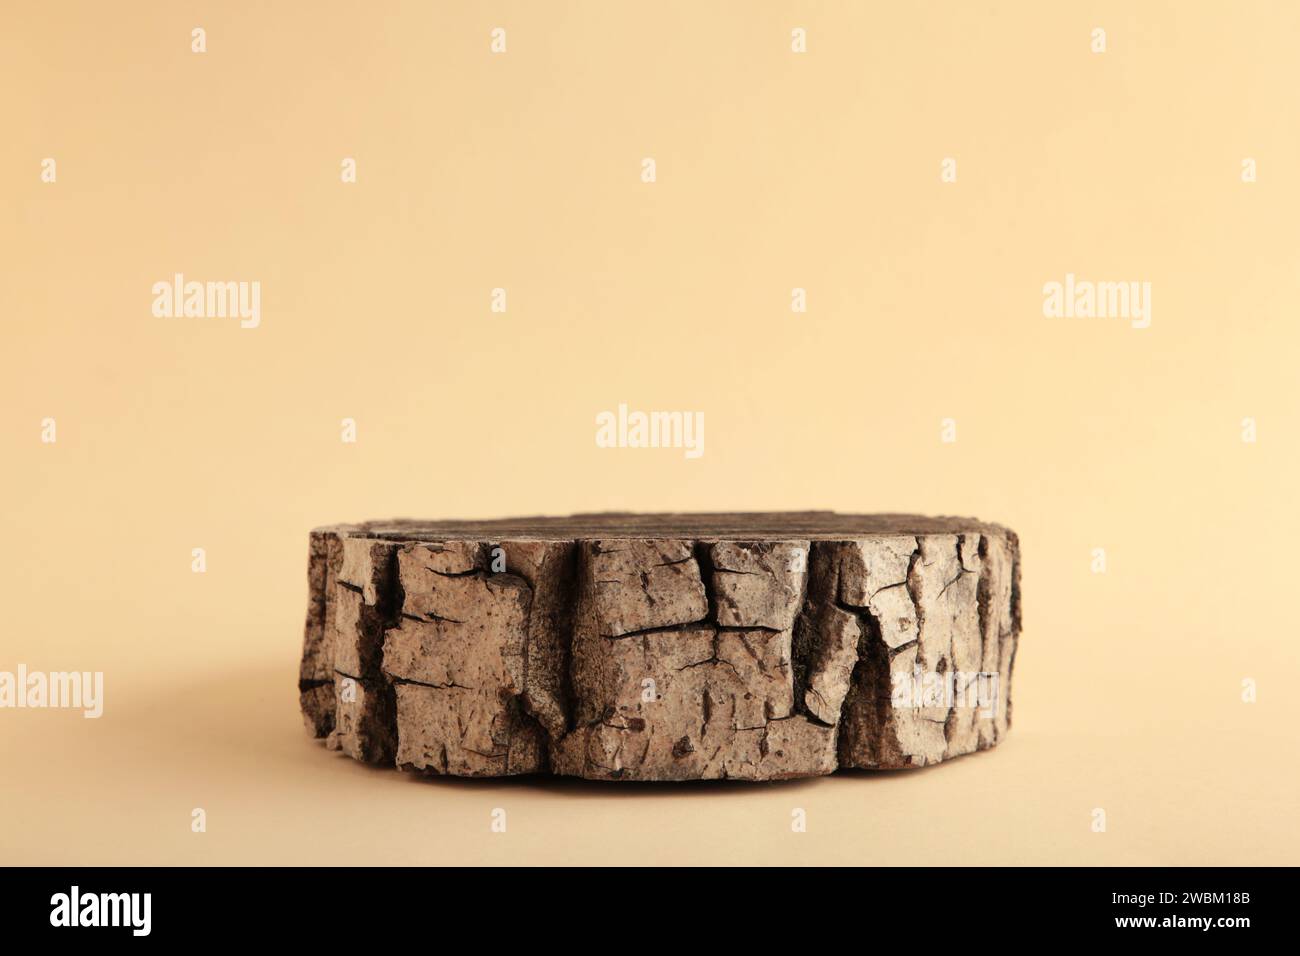 Holzstumpf auf beigefarbenem Hintergrund. Querschnitt des Baumstamms, Platz für Text. Draufsicht Stockfoto